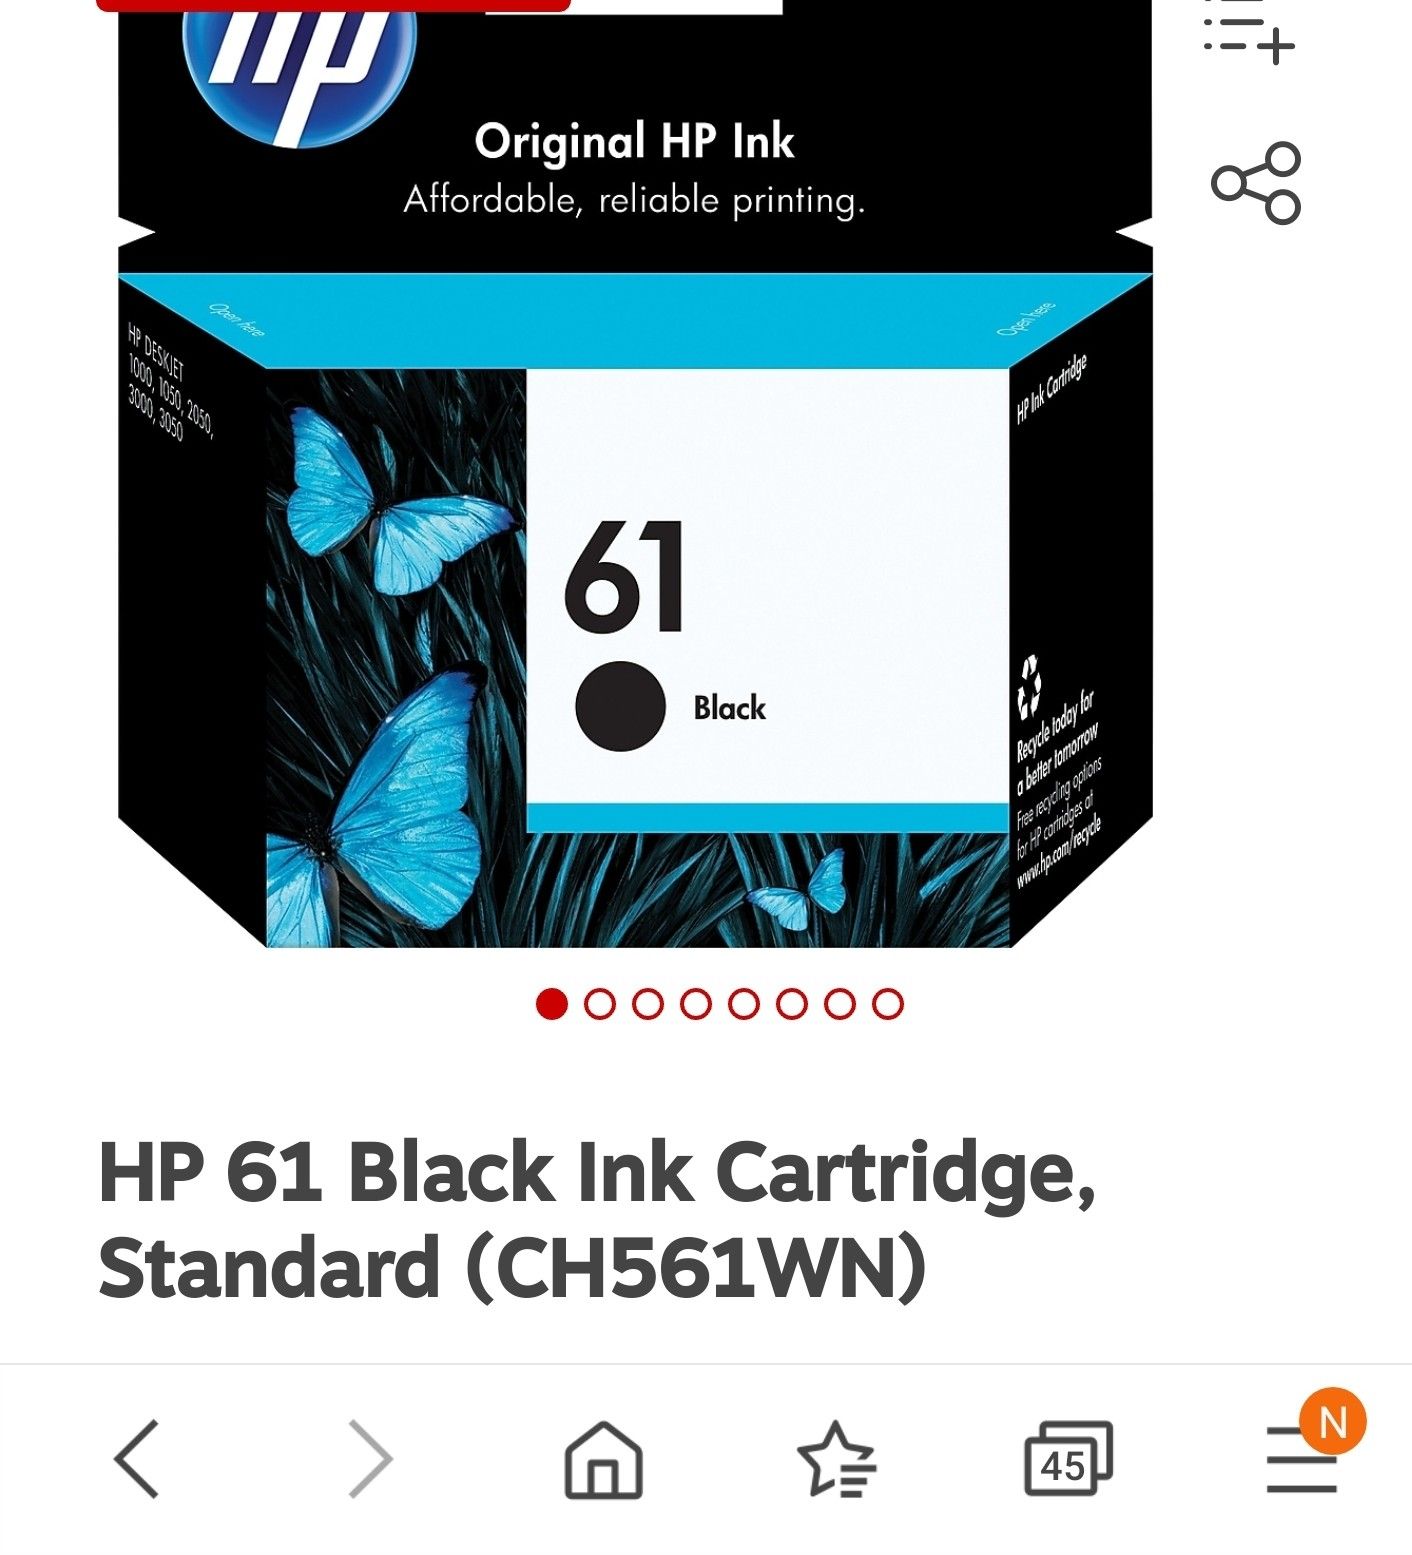 HP 61 black ink cartridge